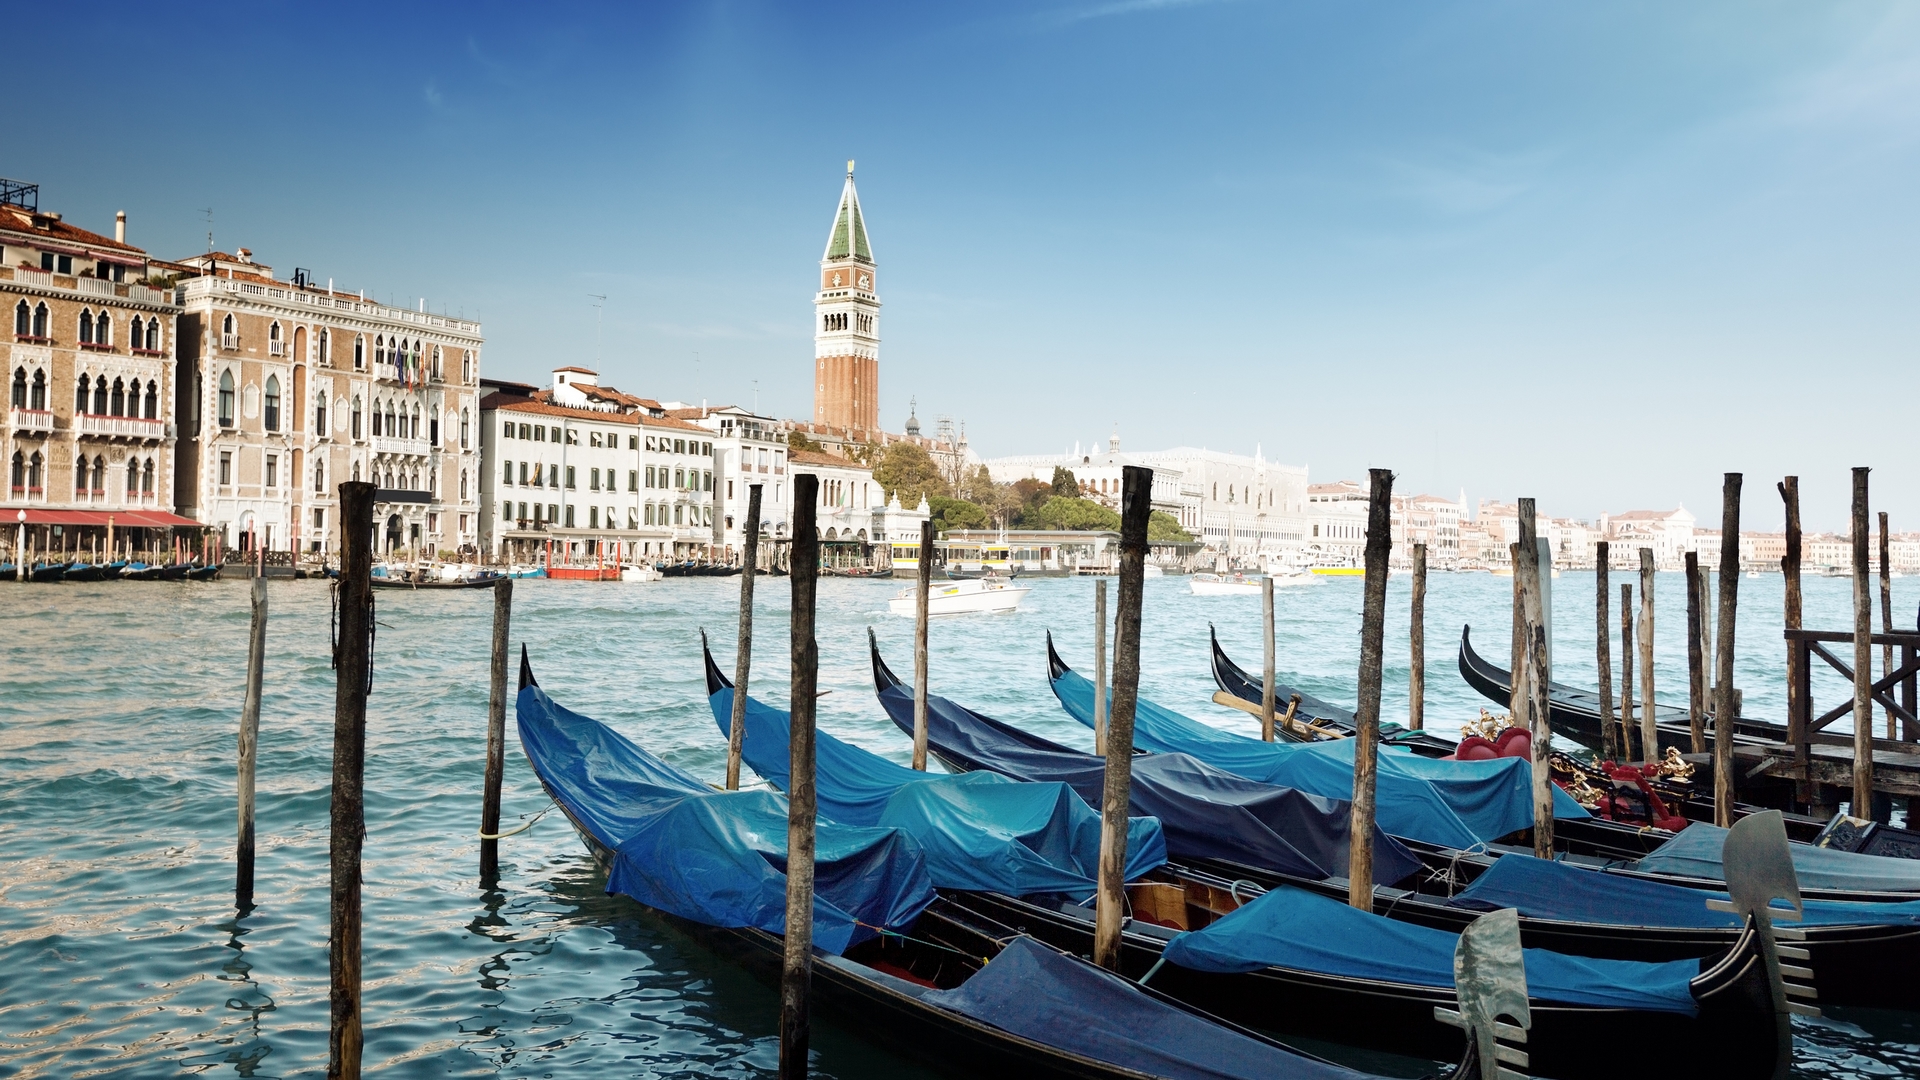 Скачать обои бесплатно Города, Венеция, Сделано Человеком картинка на рабочий стол ПК